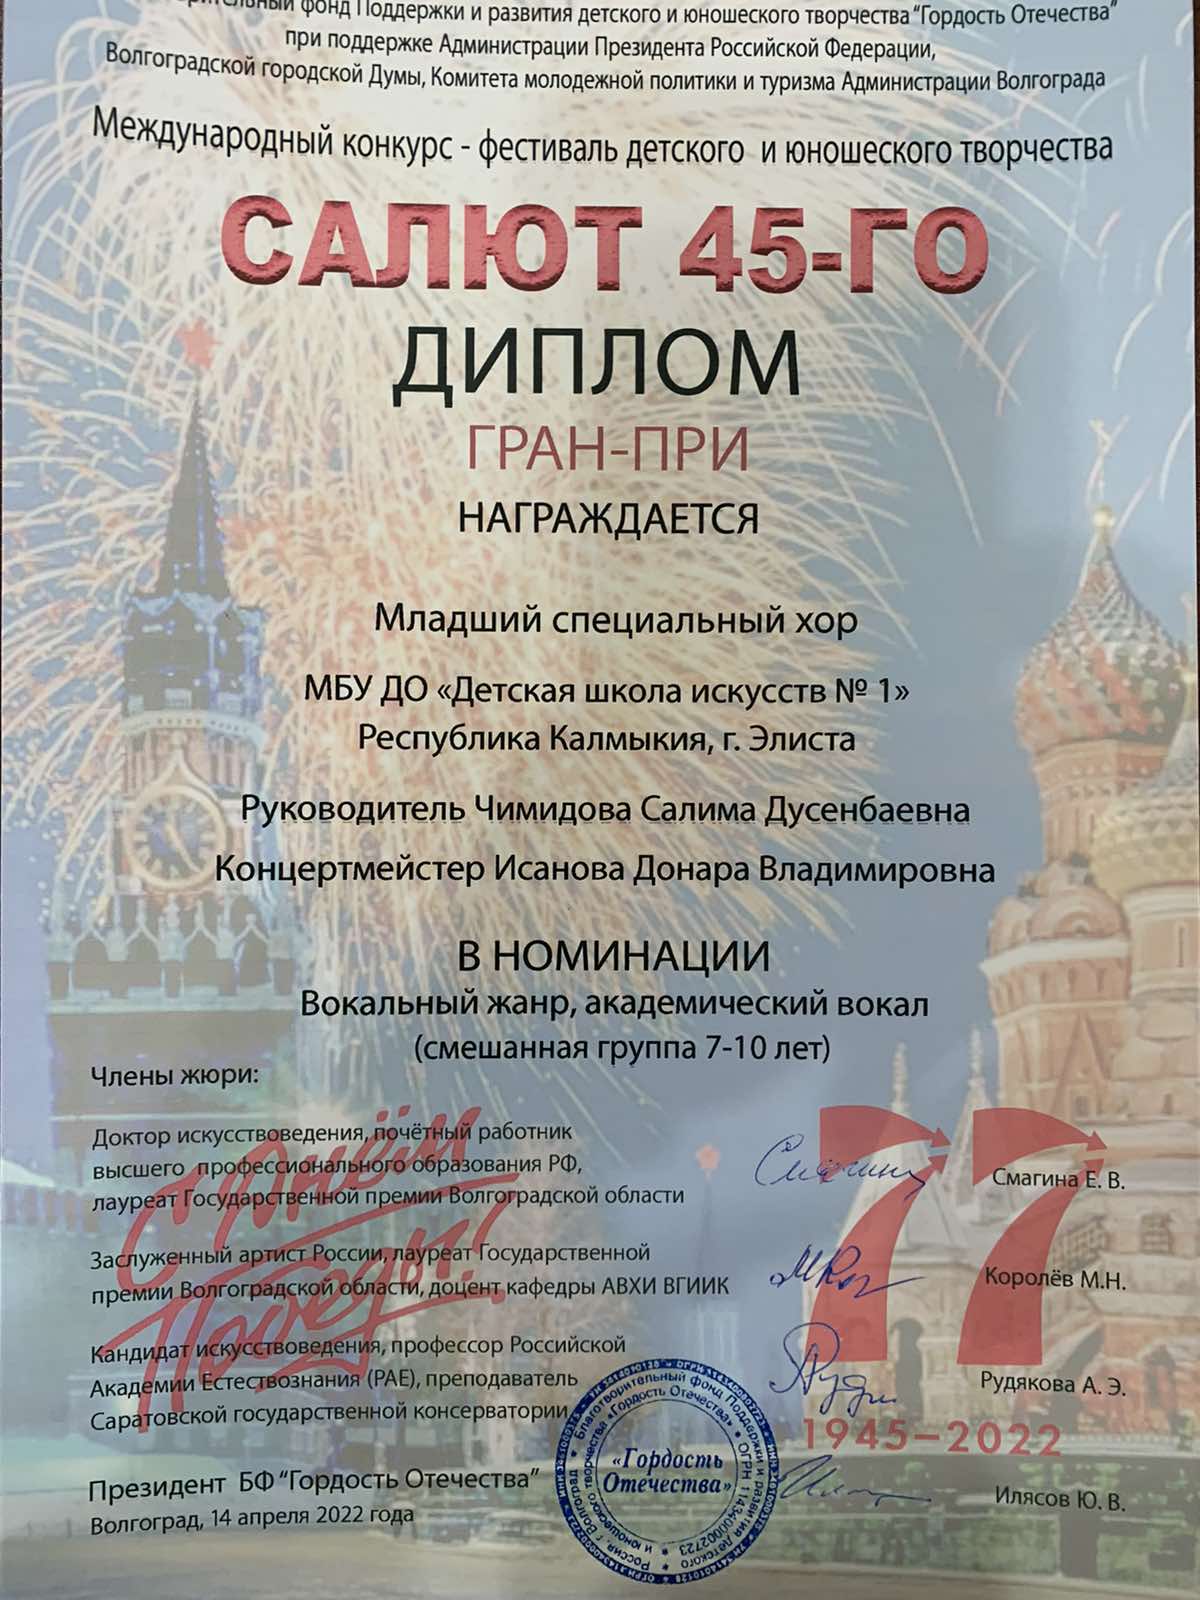 Поздравляем наши хоровые коллективы с победой на Международном конкурсе "Салют 45го" (г.Волгоград)!